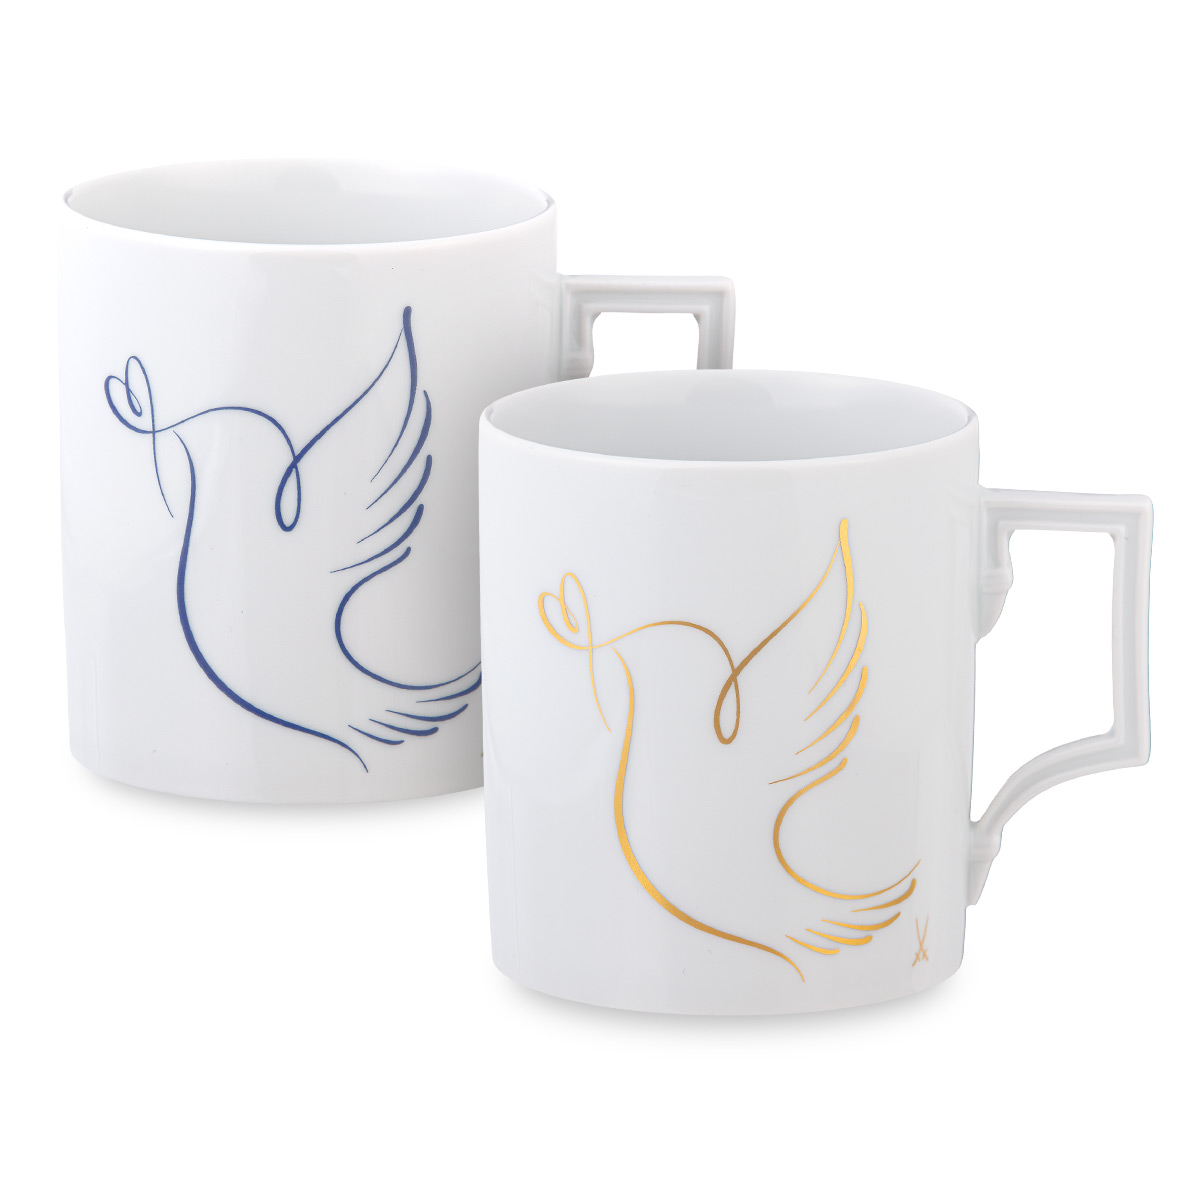 Die Meissen Mugs in der neuen Peace Collection: Peace Dove